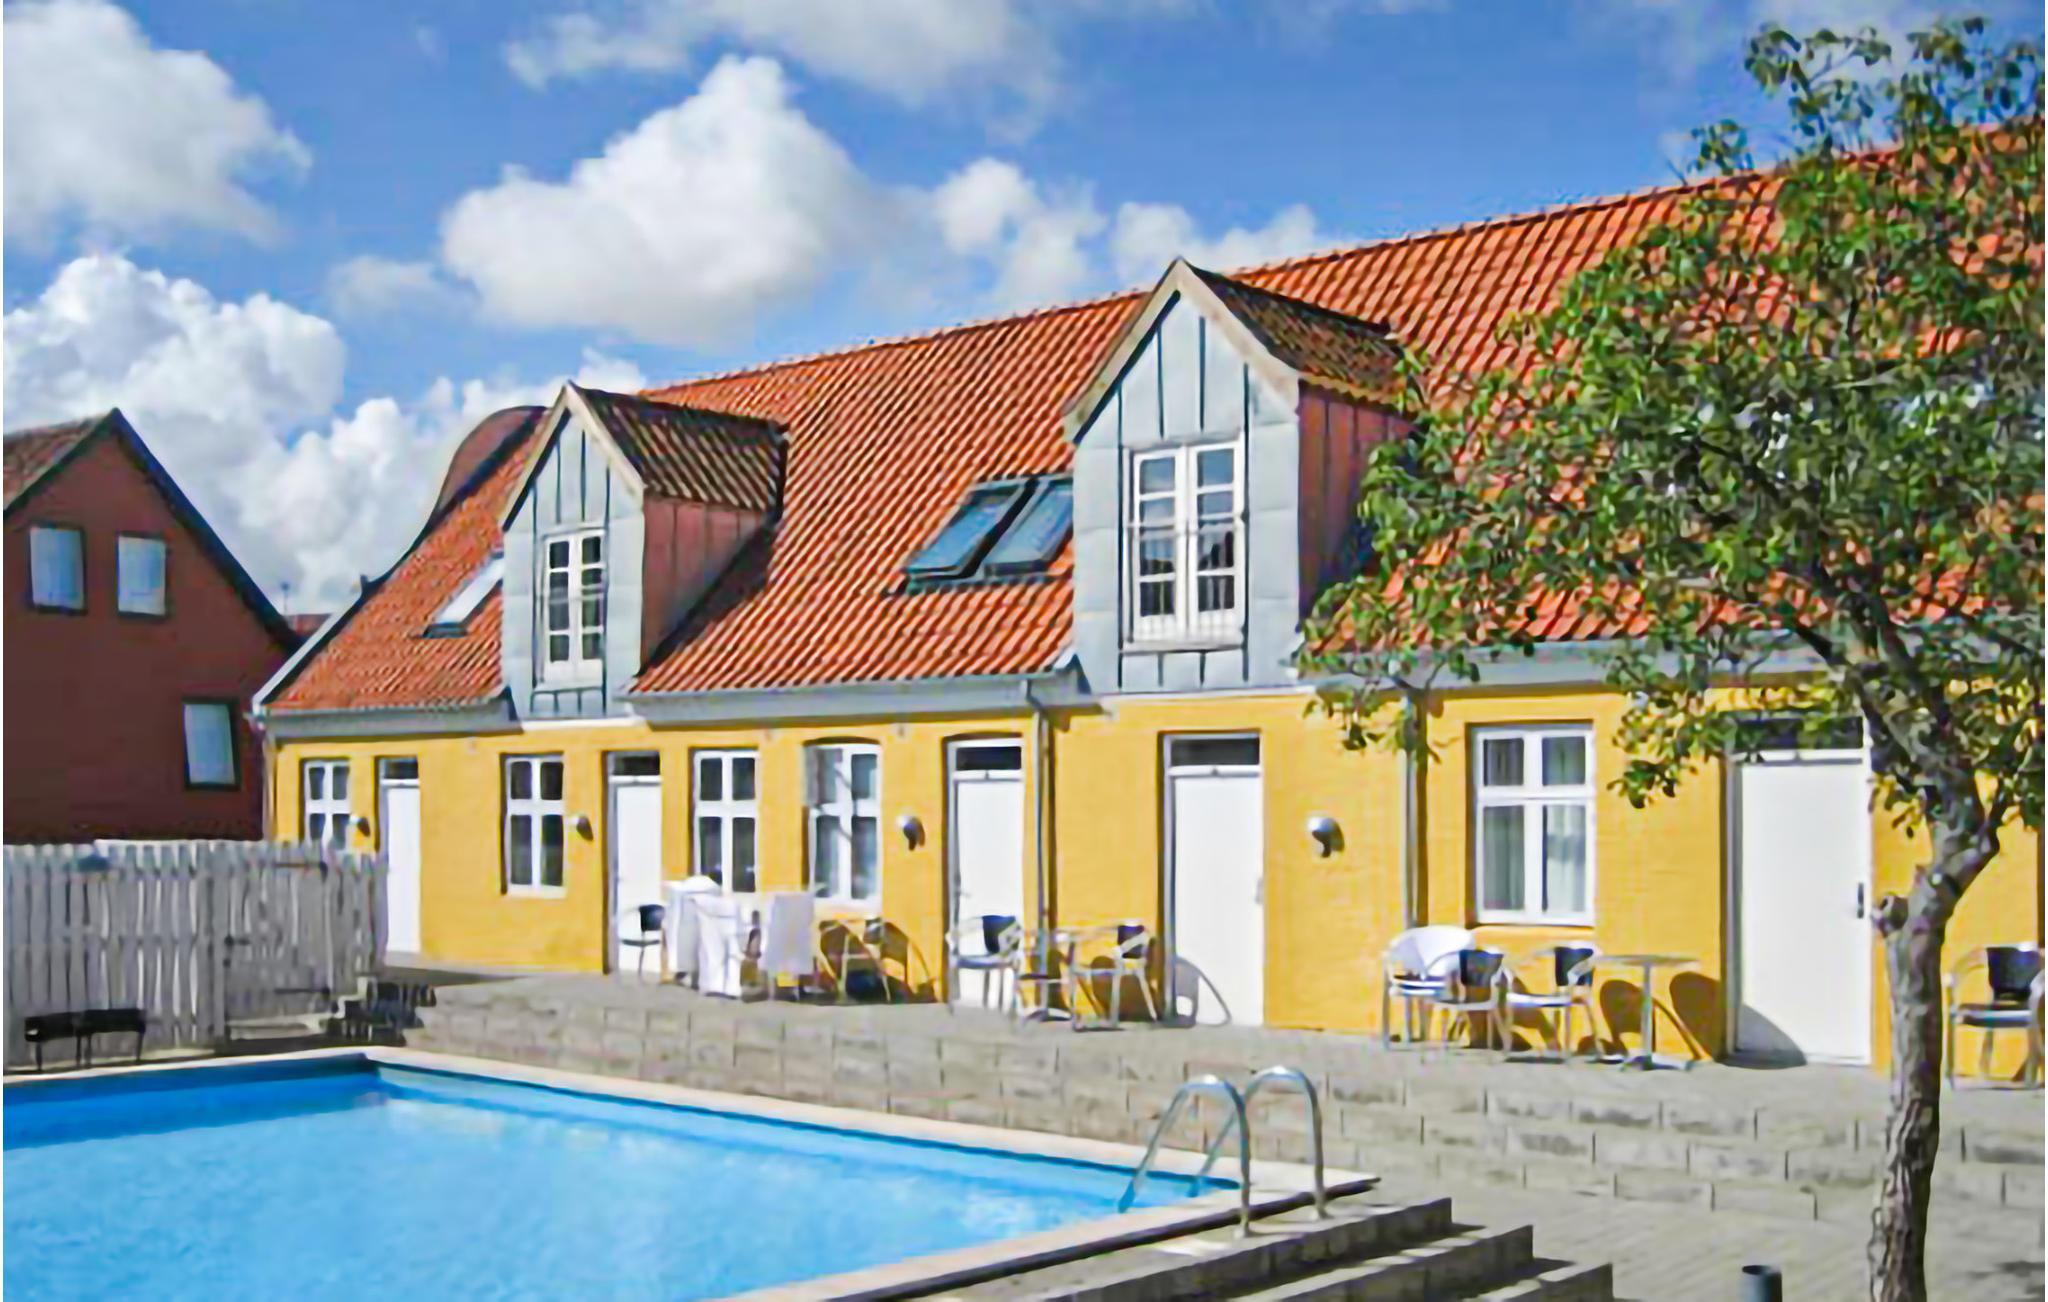 Sommerhus - 4 - Brøddegade 14, lejl. - 3760 - Gudhjem - 130-I66110 - Dansk-sommerhusferie.dk